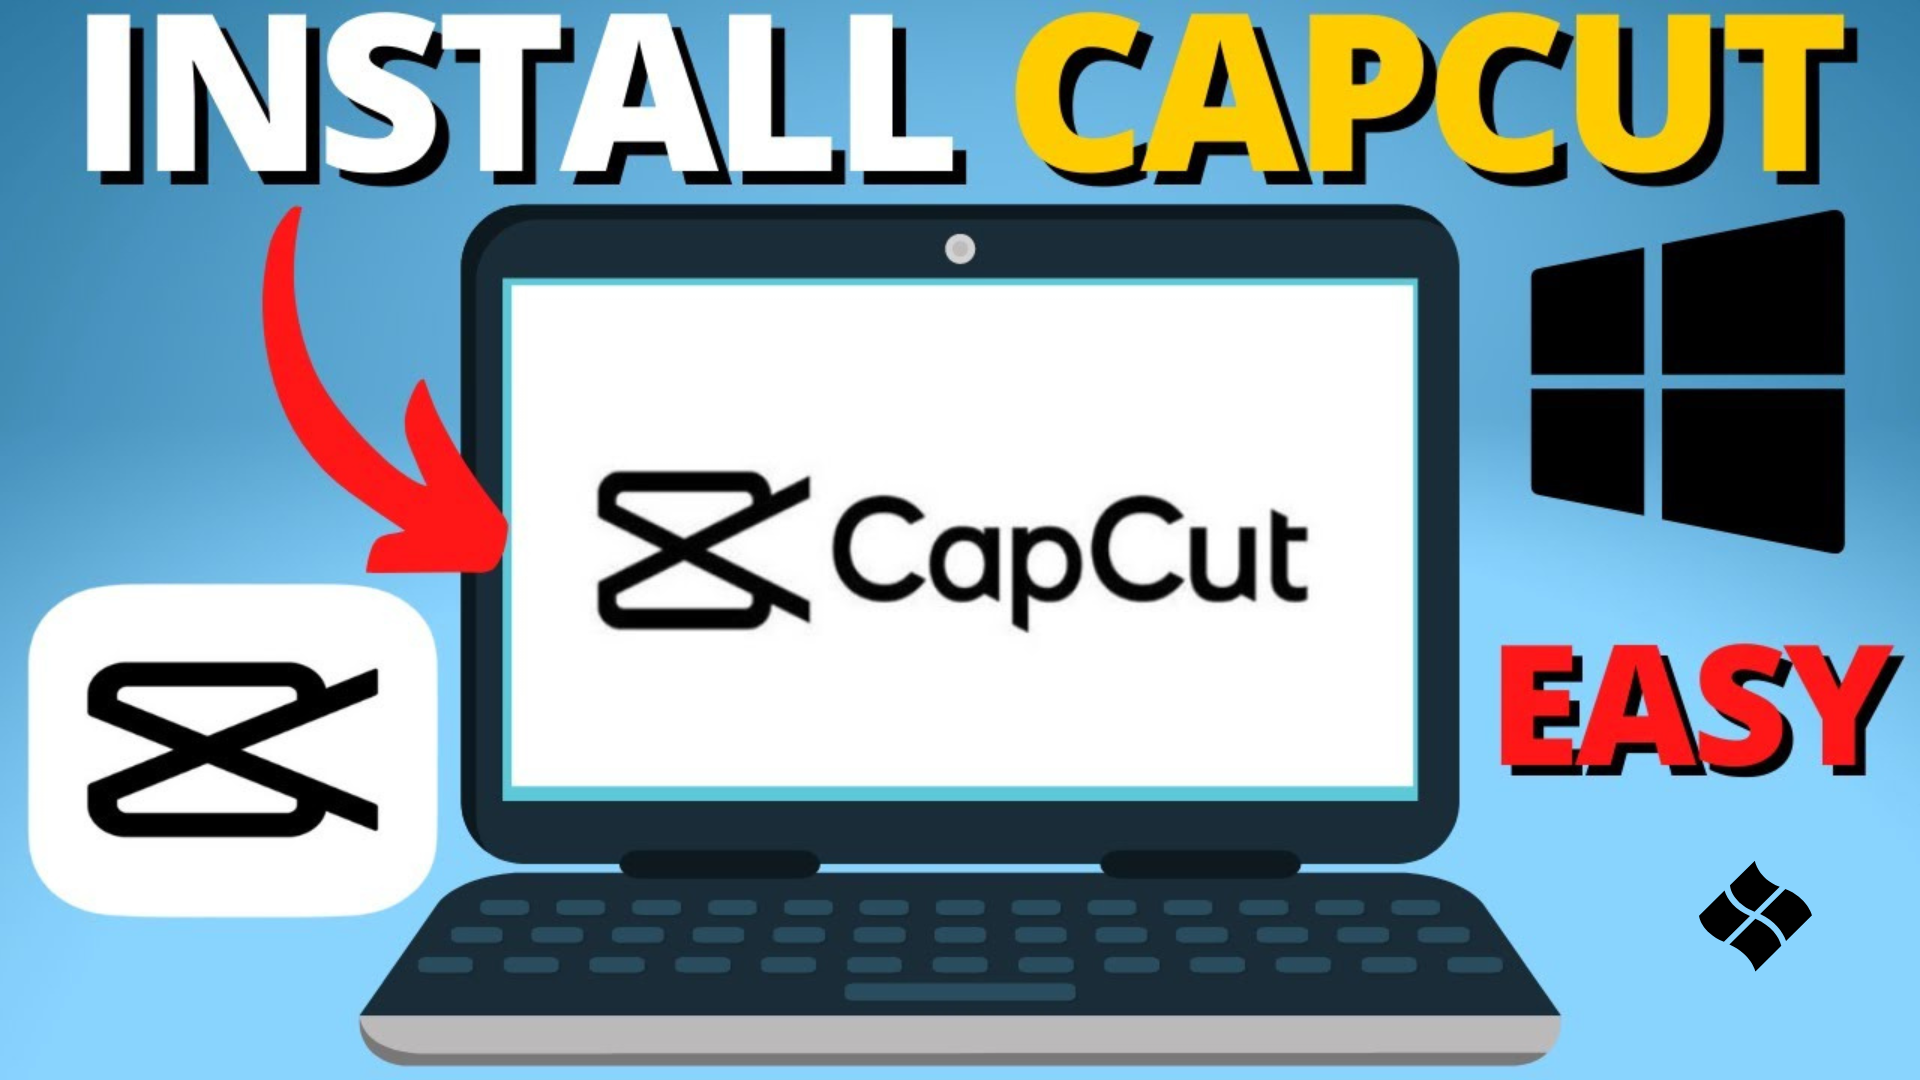 Download CapCut for Windows PC